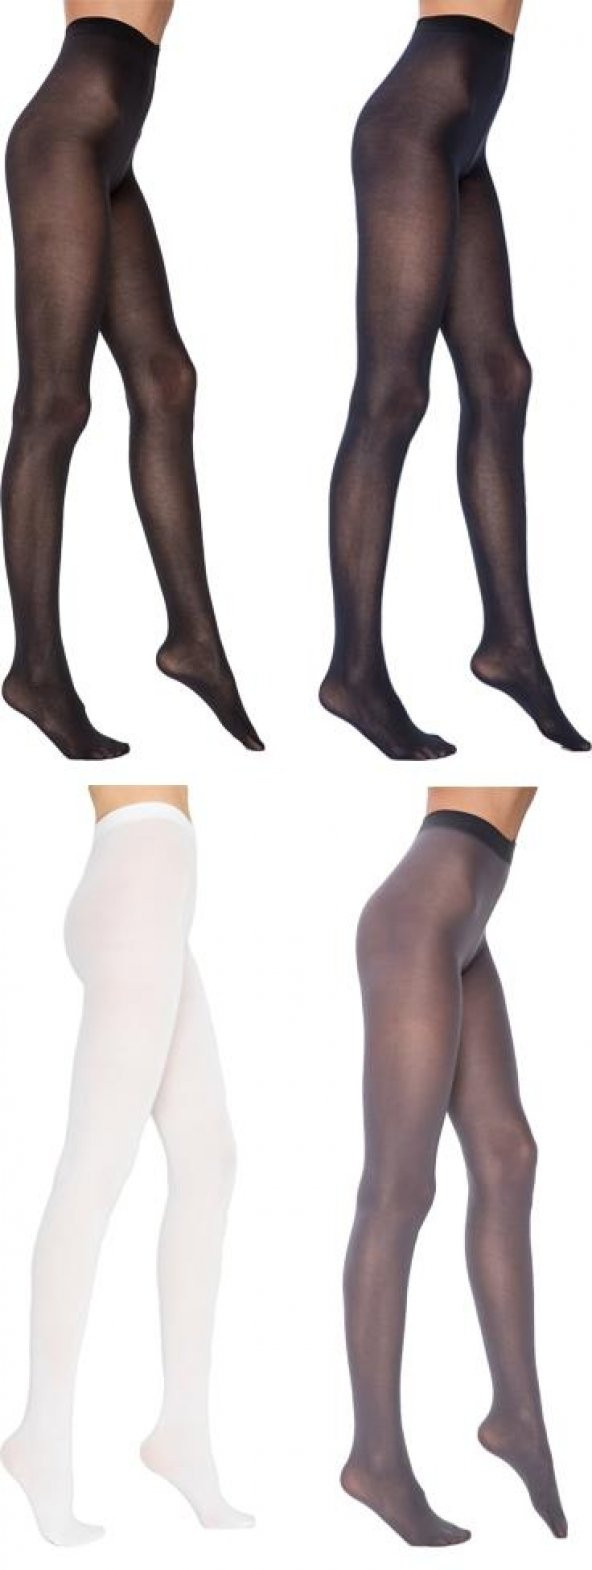 Penti Koton 60 Den Külotlu Çorap Pamuklu Mat Ağlı 2li Paket Kadın